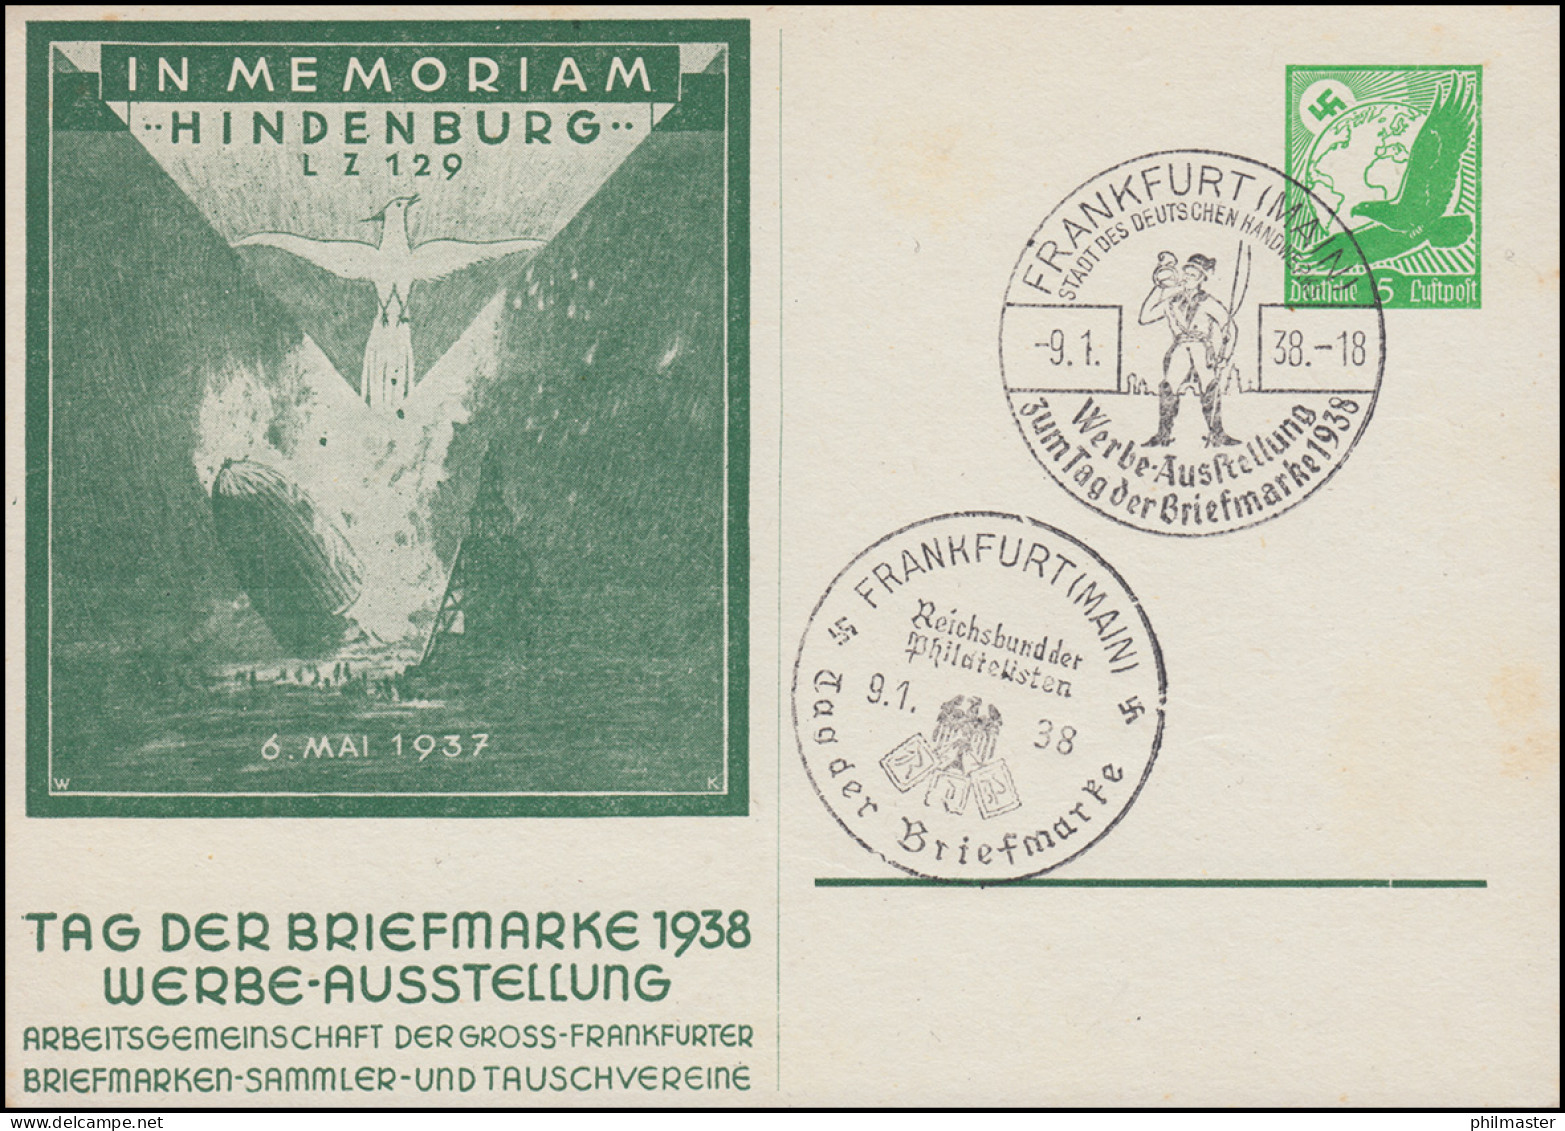 PP 142 Im Memoriam Hindenburg LZ 129 - Tag Der Briefmarke 2 SSt FRANKFURT 9.1.38 - Día Del Sello